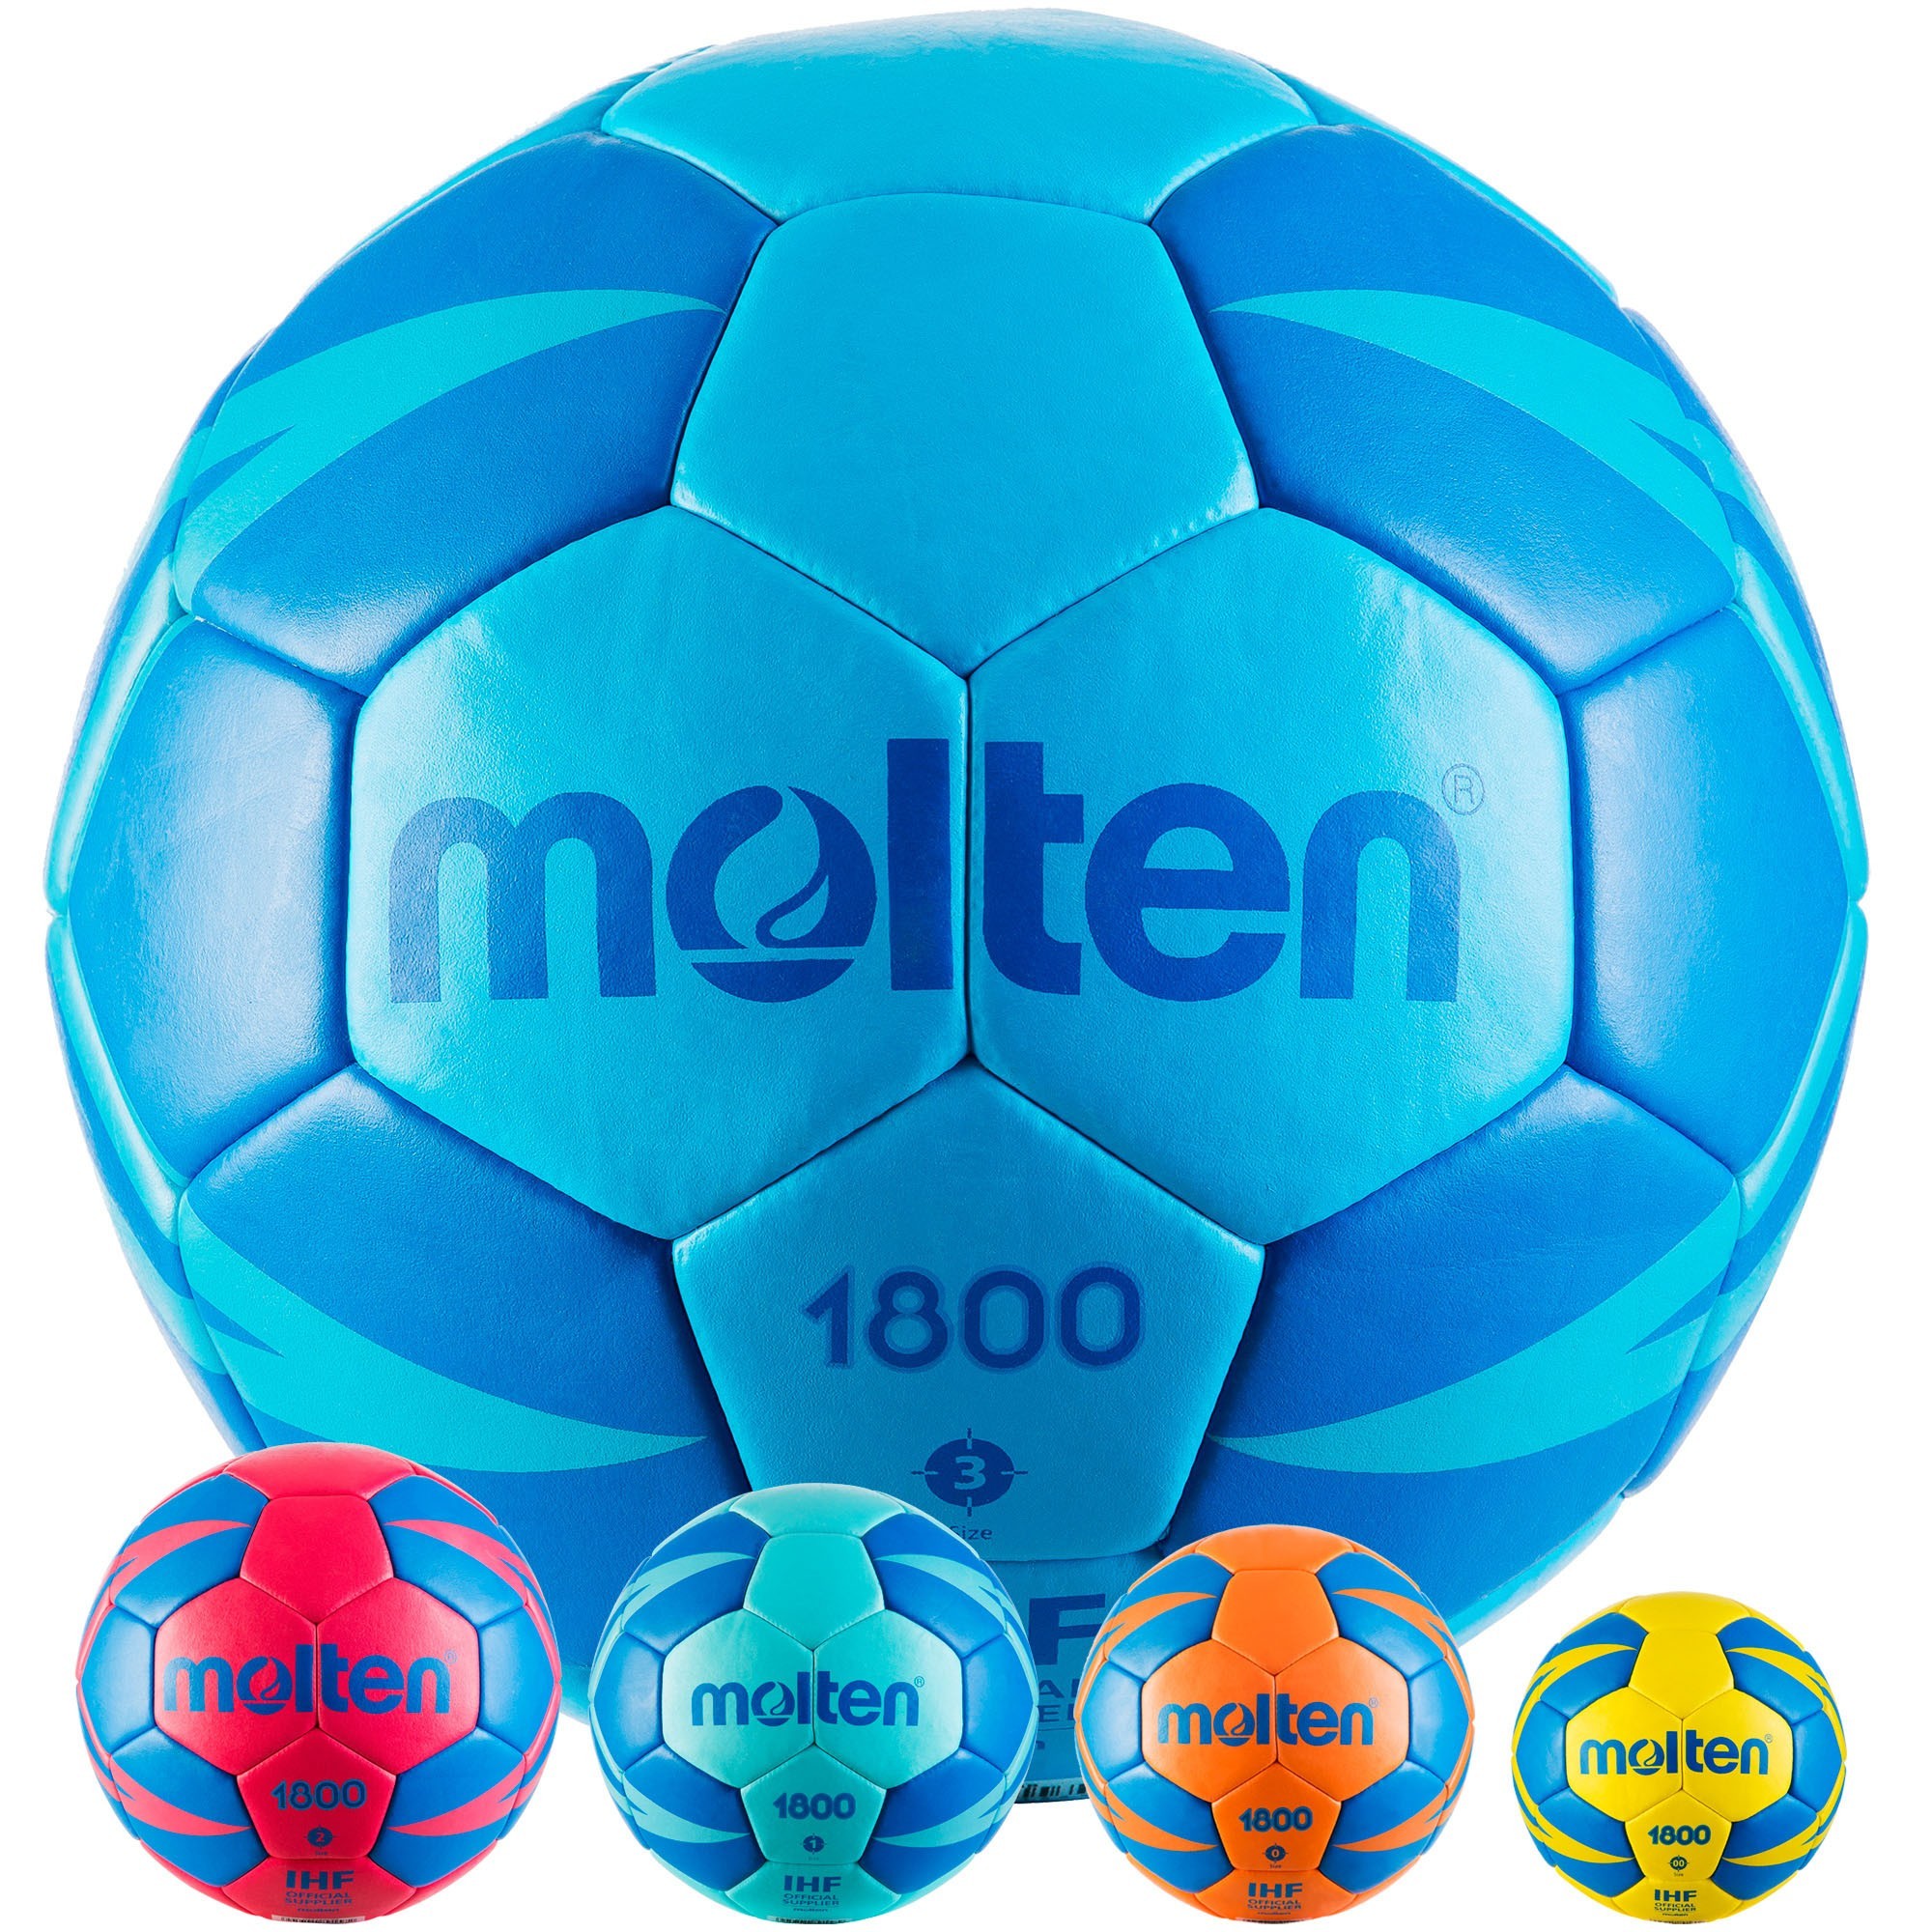 Molten-HX1800 Handball pour enfants, sans gonflage, taille standard  officielle 0, 1, 2/3 PU, balle au point à la main, entraînement en salle -  AliExpress